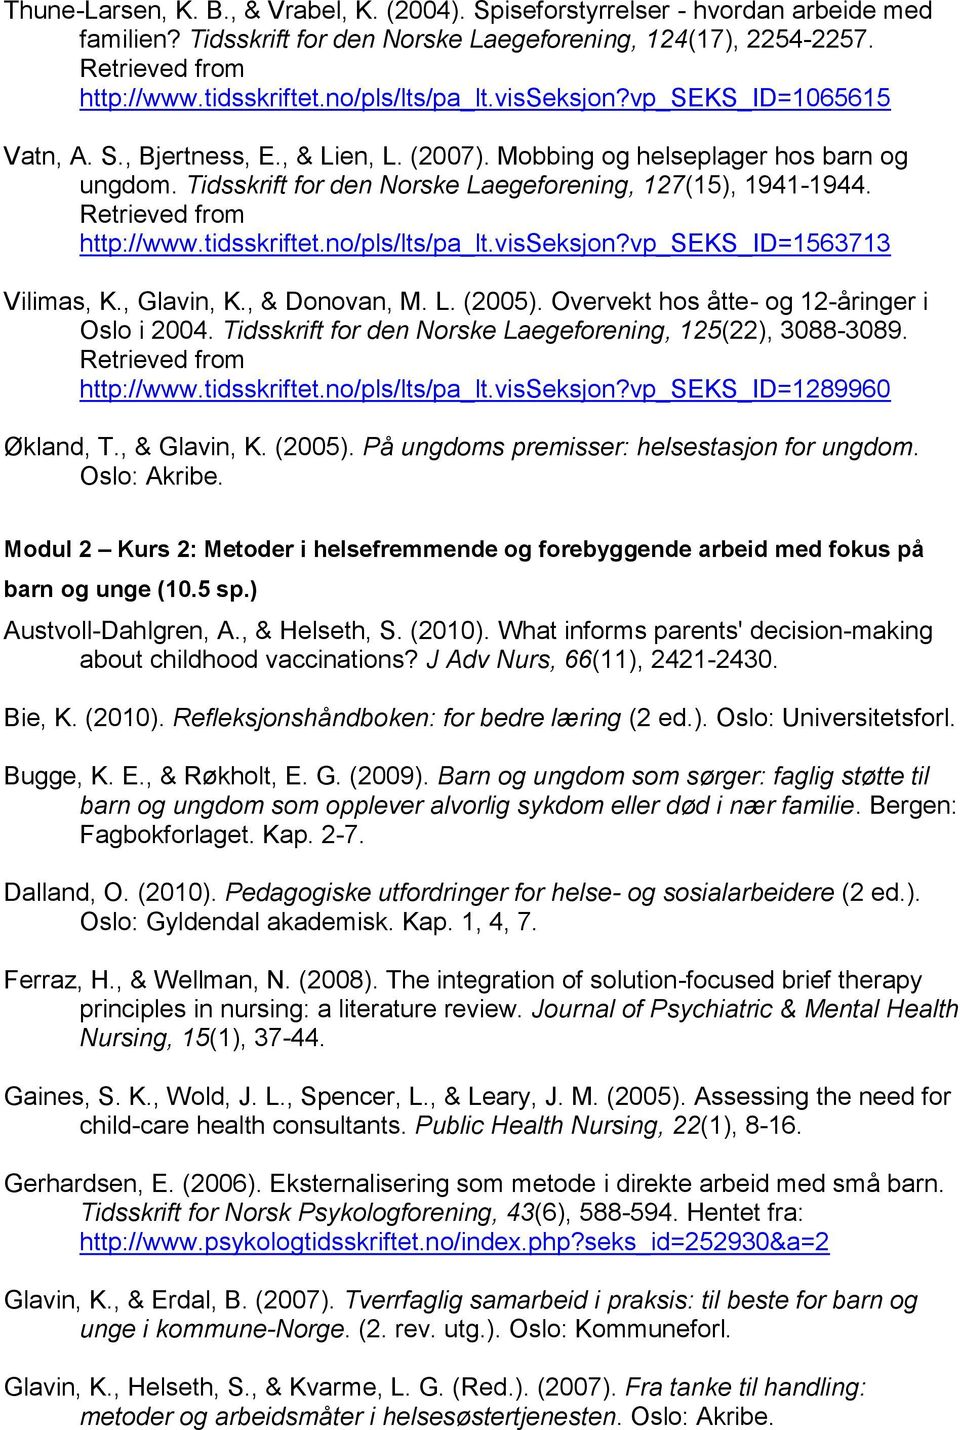 Retrieved from http://www.tidsskriftet.no/pls/lts/pa_lt.visseksjon?vp_seks_id=1563713 Vilimas, K., Glavin, K., & Donovan, M. L. (2005). Overvekt hos åtte- og 12-åringer i Oslo i 2004.